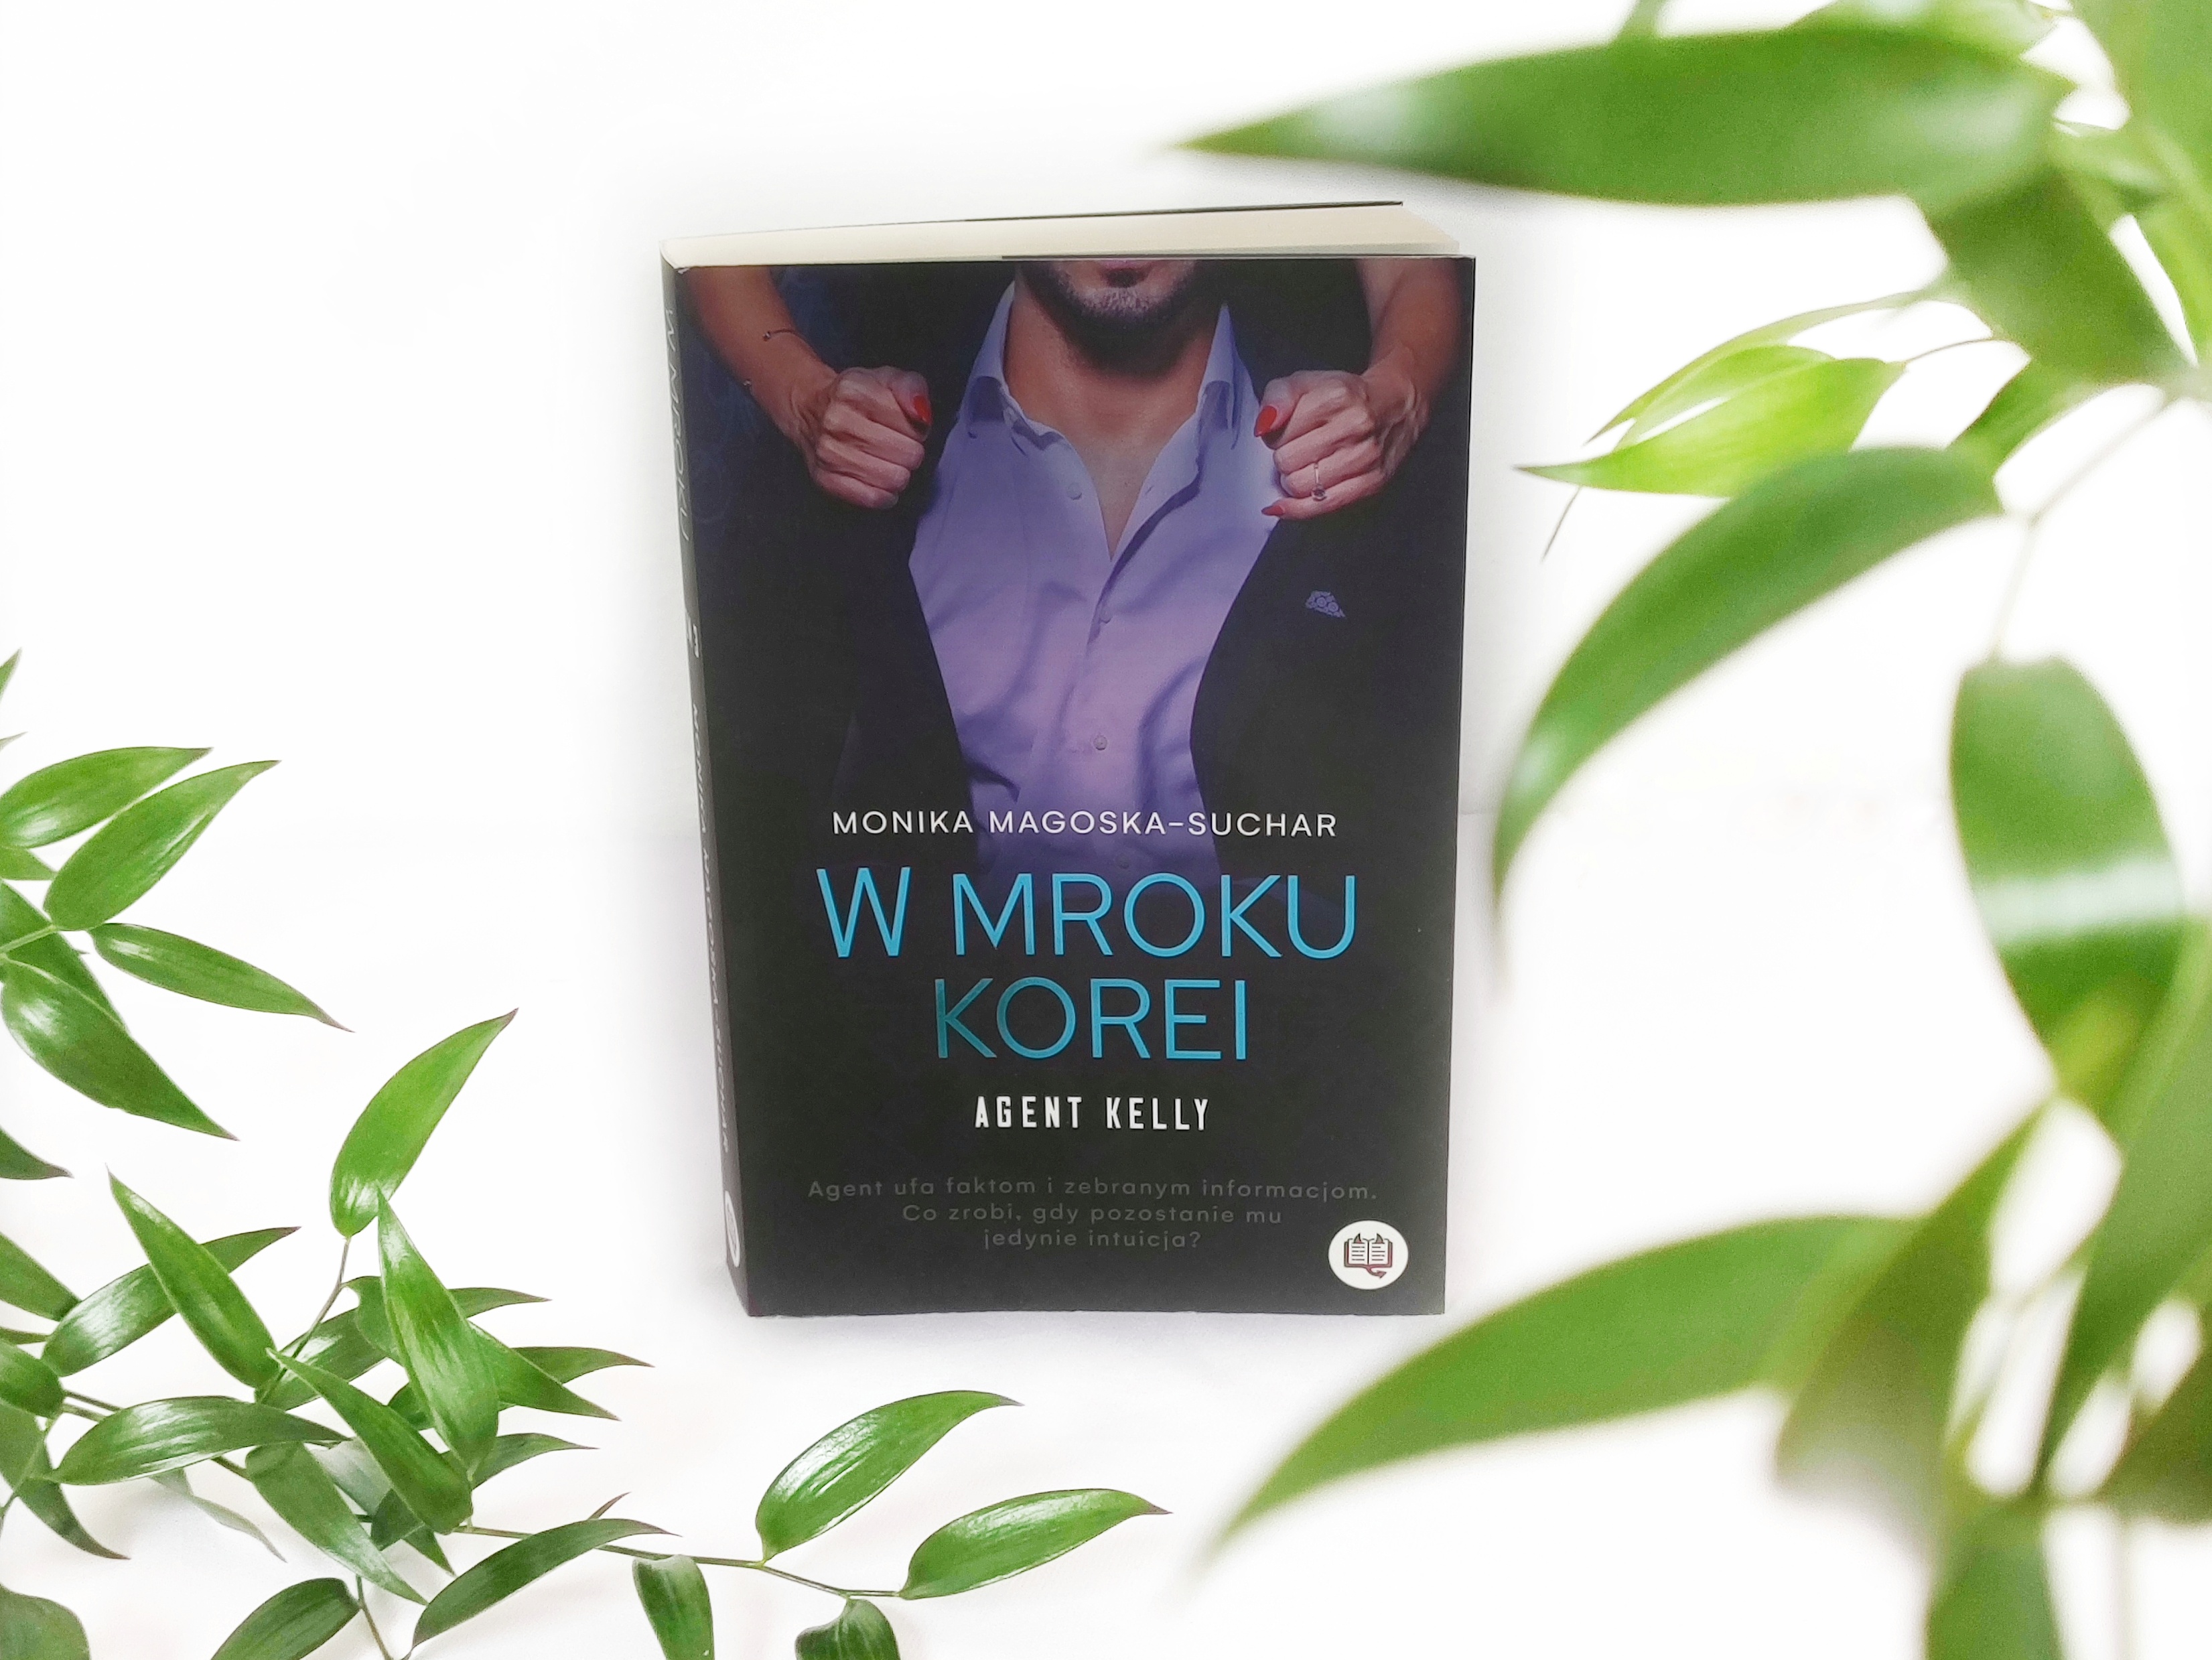 Recenzja książki w mroku Korei